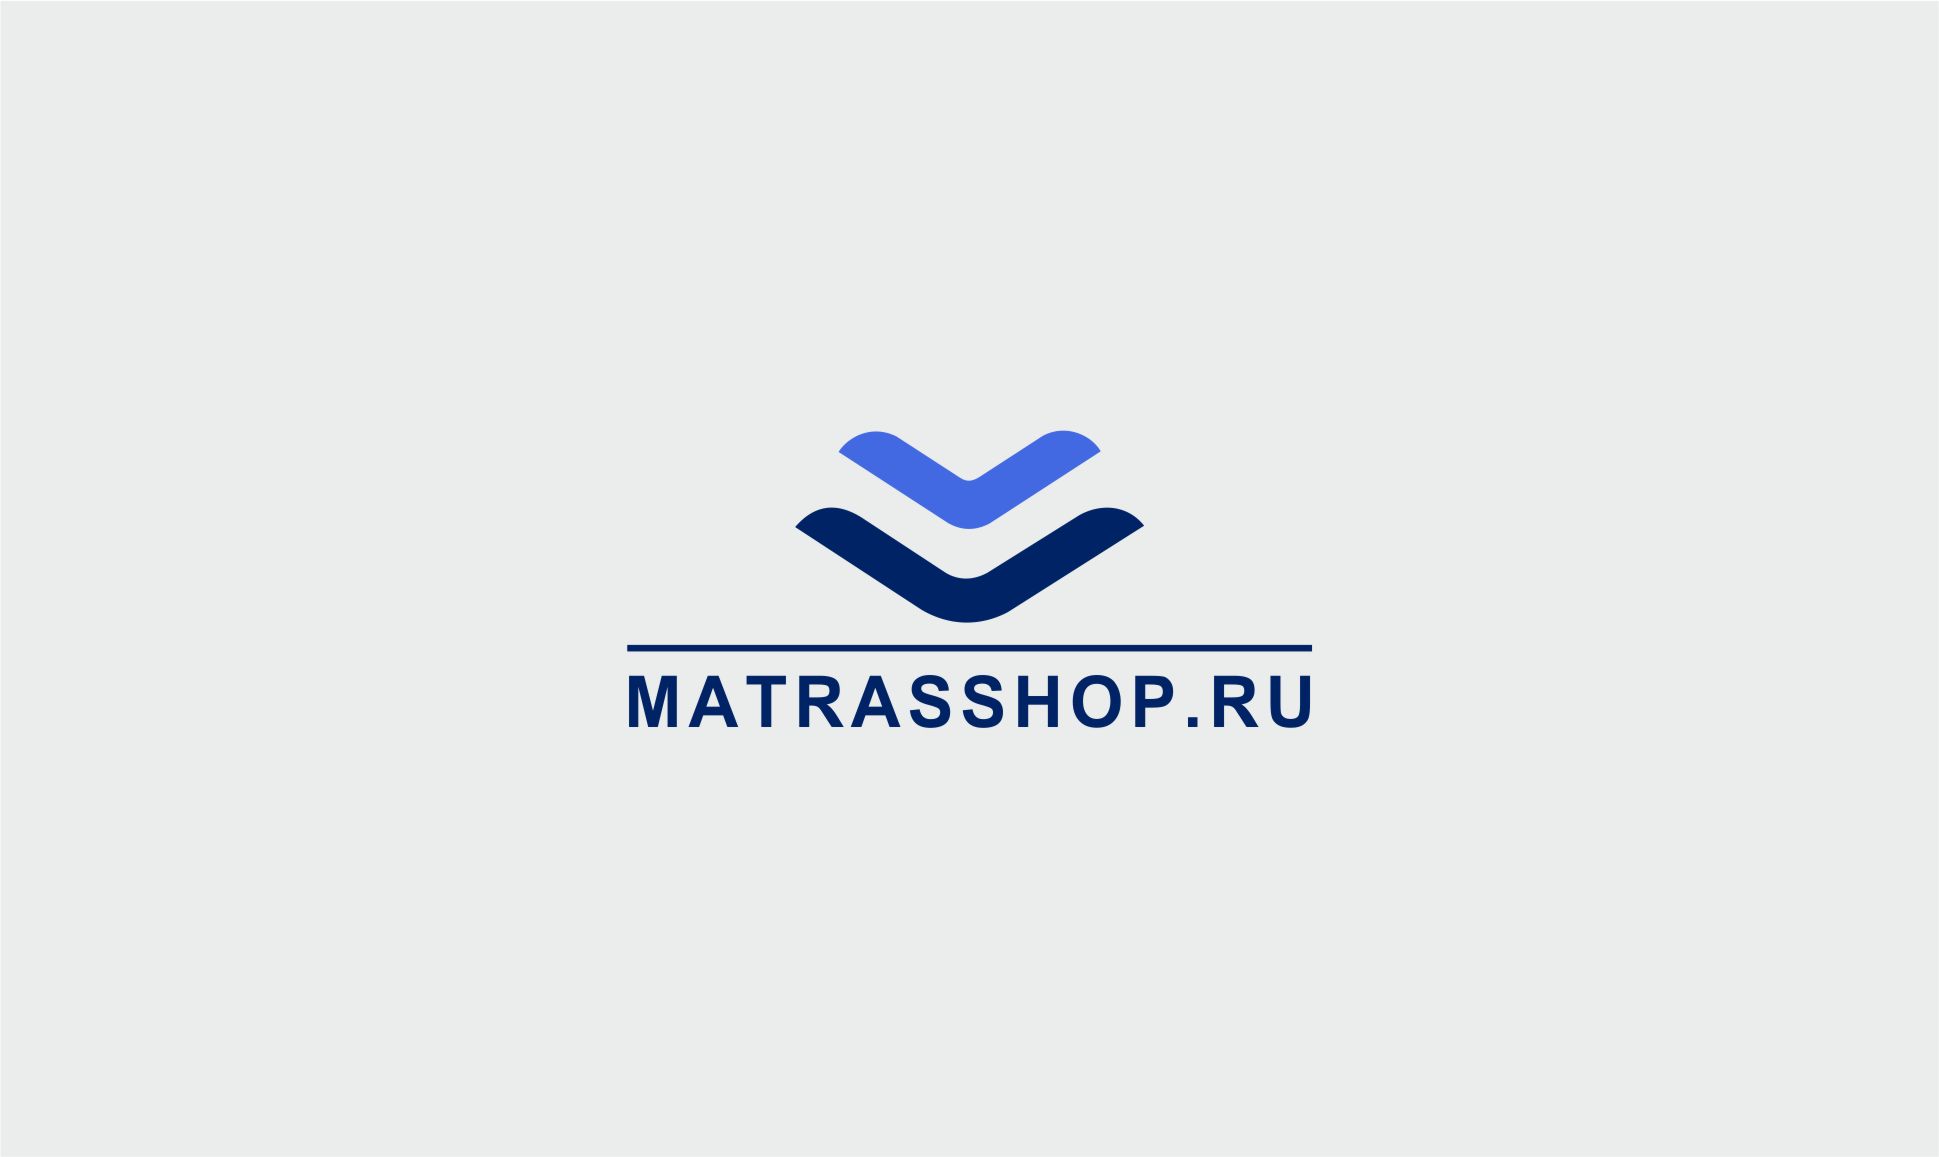 Логотип для Логотип для сети магазинов MATRASSHOP.RU - дизайнер SobolevS21